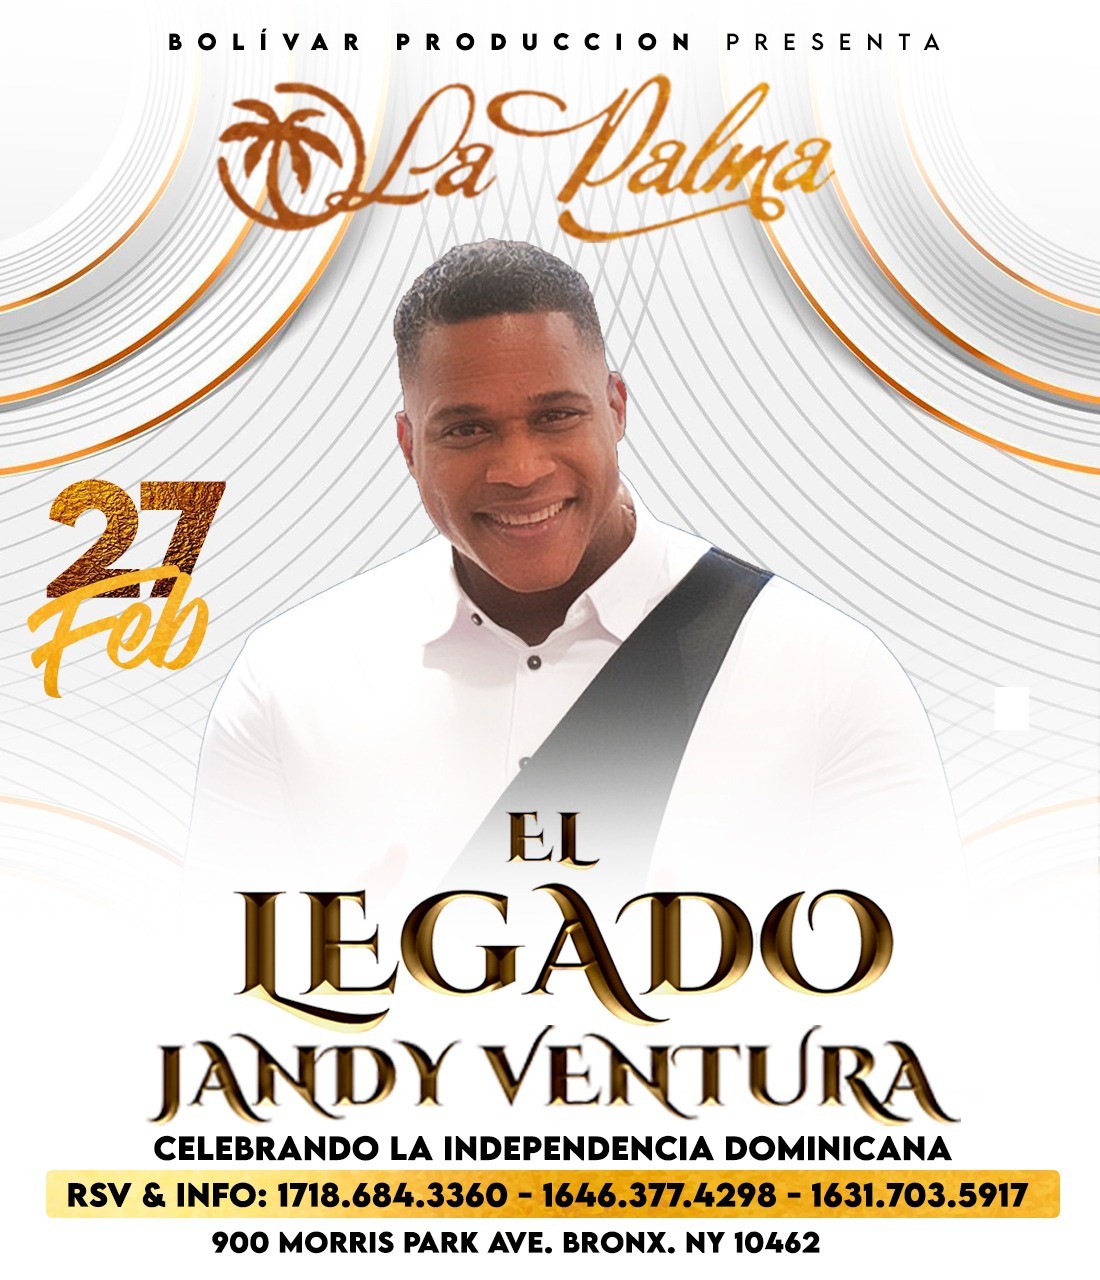 EL LEGADO JANDY VENTURA